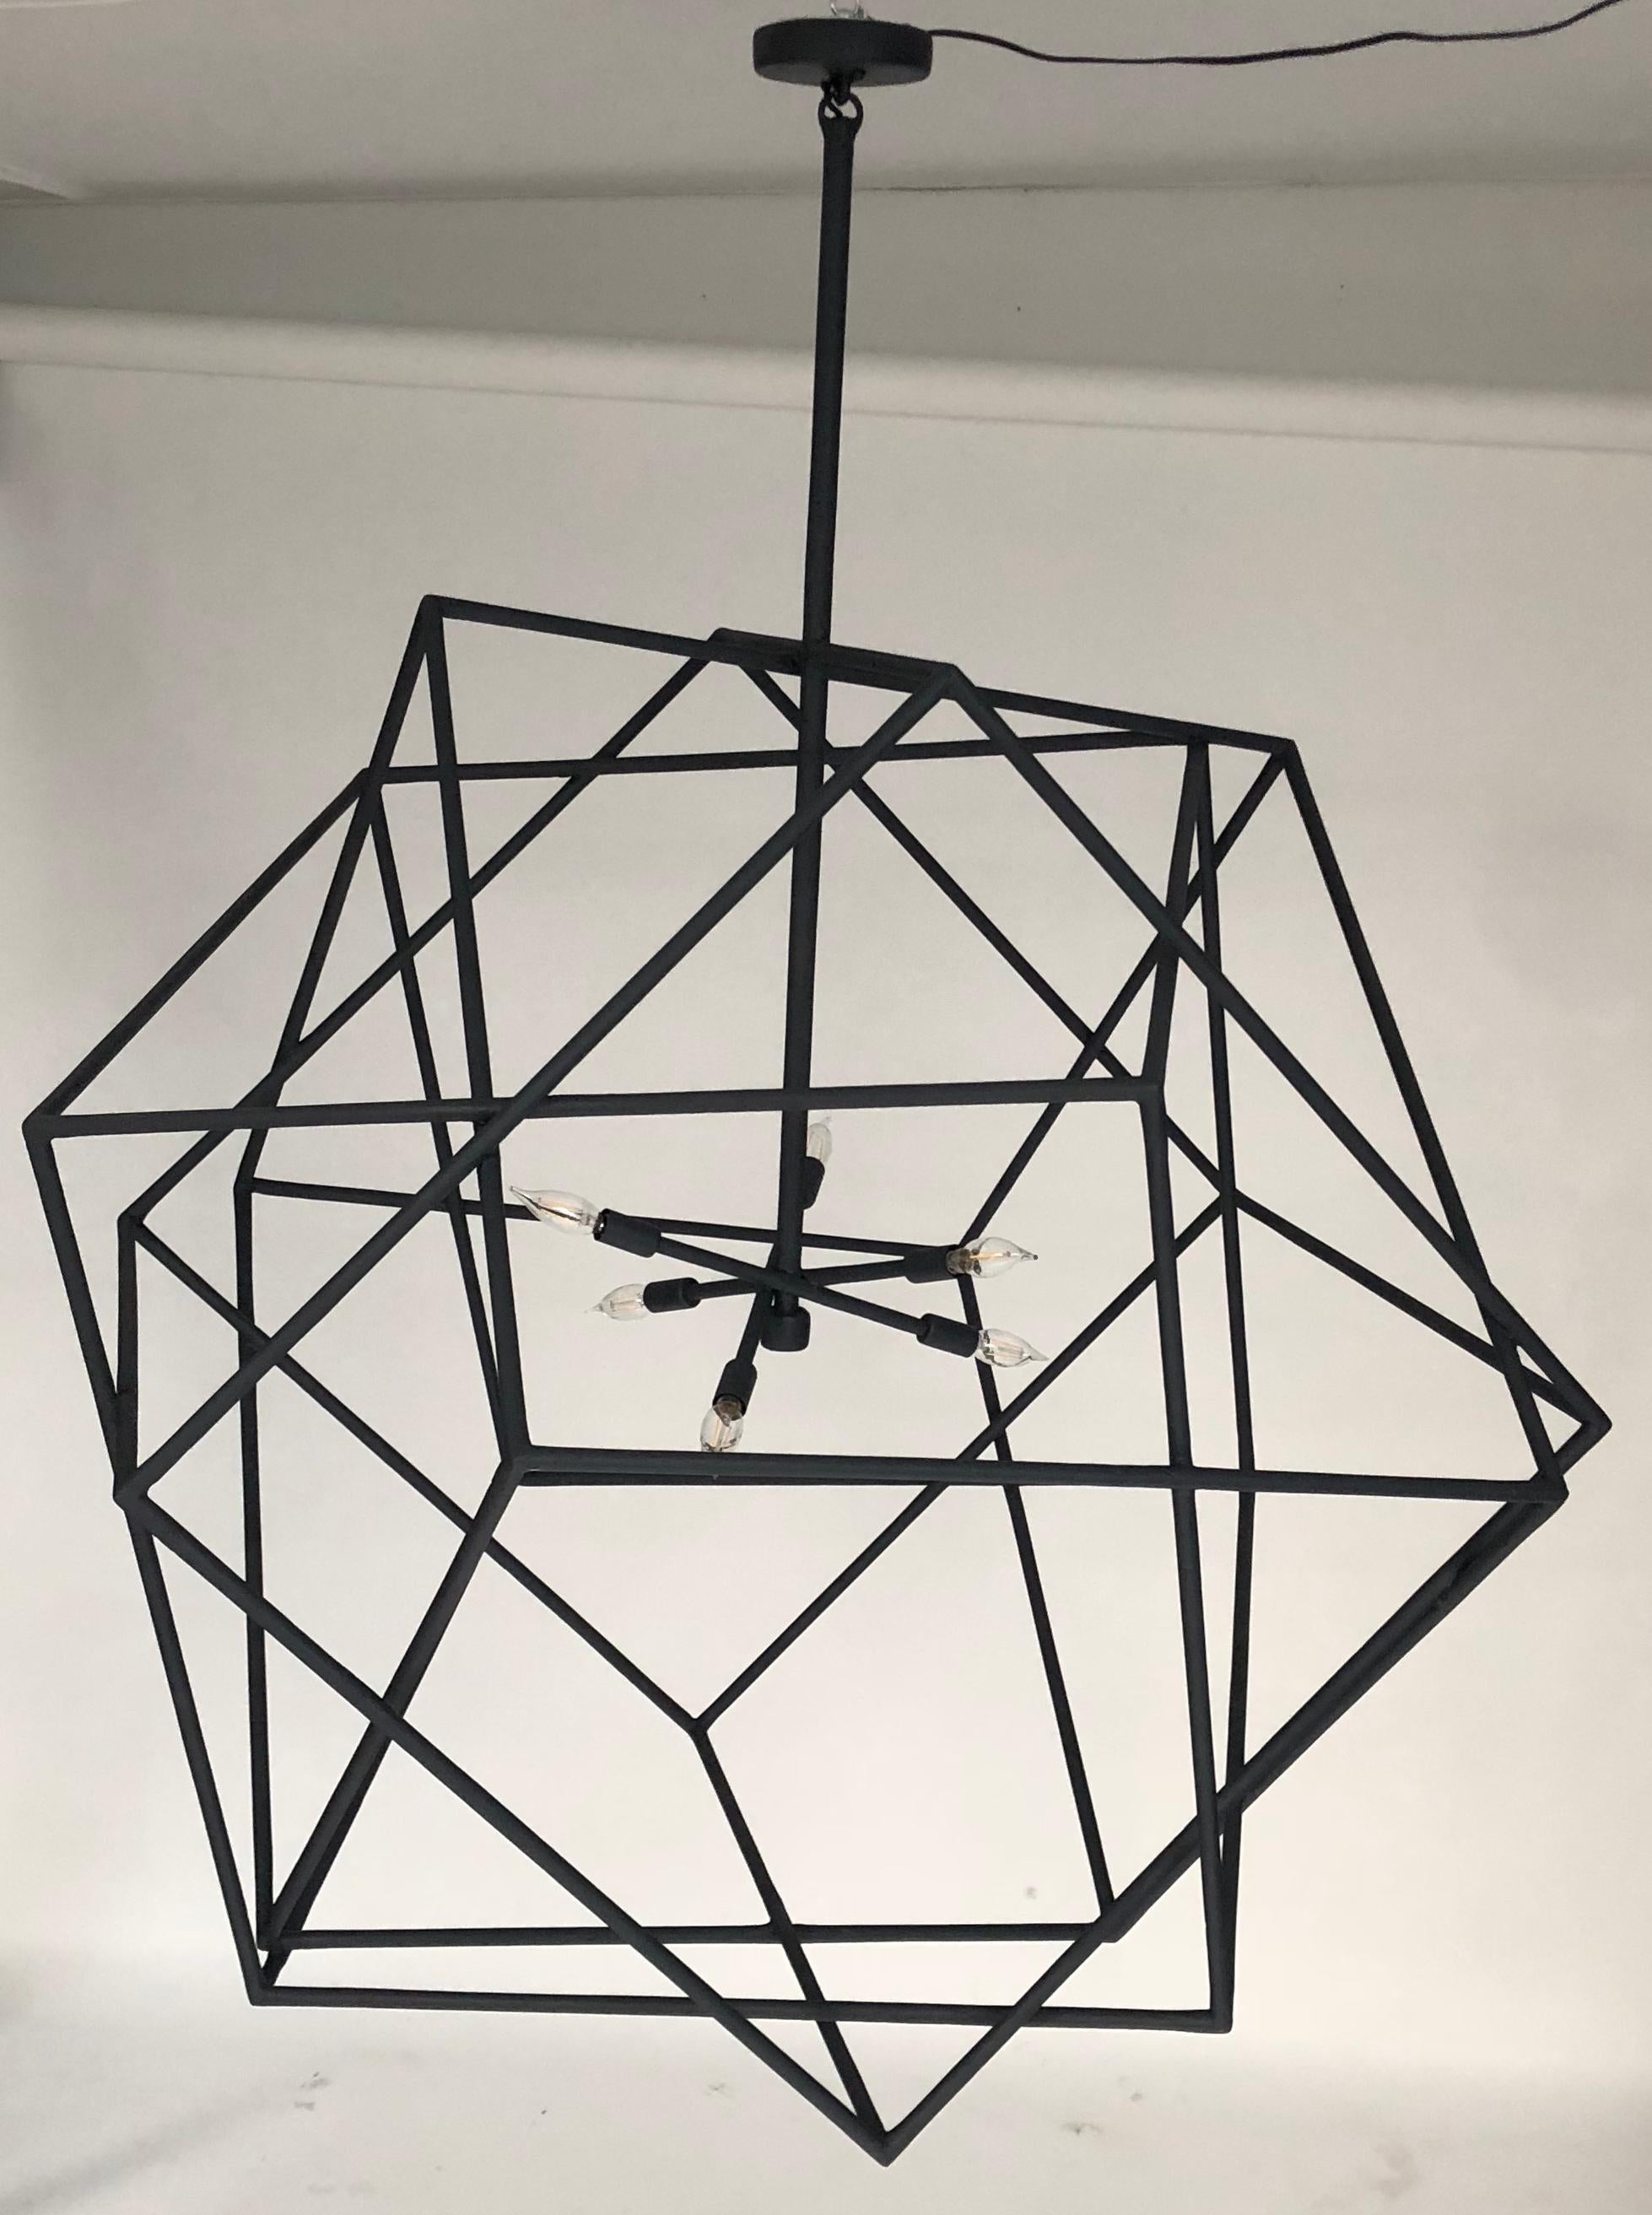 Ce lustre géométrique cubique est composé de trois cubes entrelacés.
La patine noire du plâtre de Paris donne un aspect organique à cette création. Le lustre est équipé de six douilles de type candélabre.

La finition peut être réalisée dans les